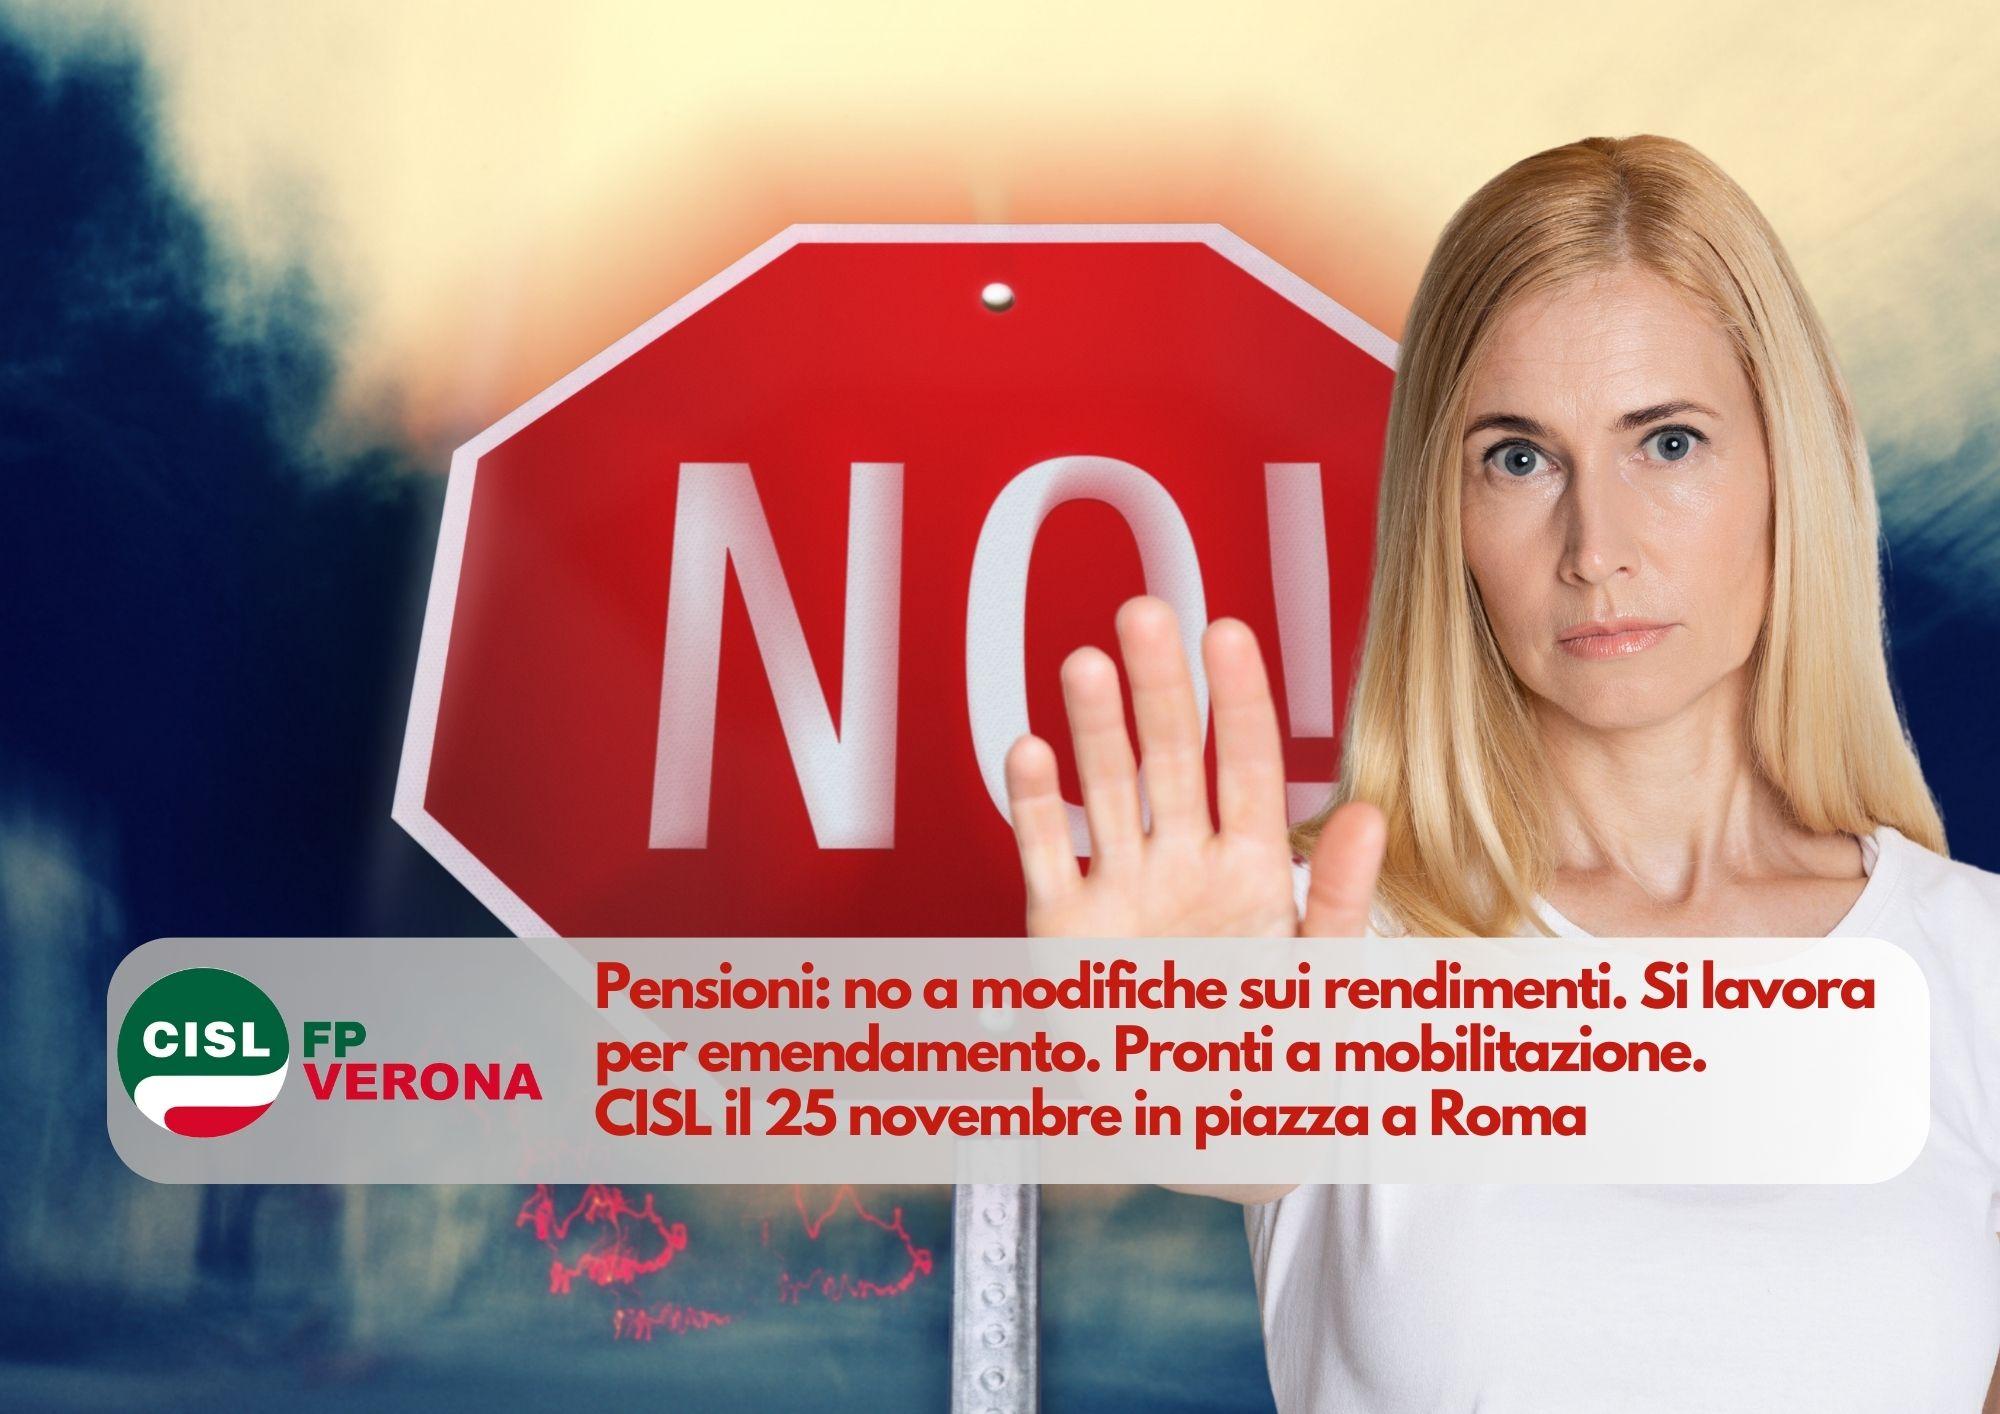 CISL FP Verona. Pensioni: no a modifiche sui rendimenti. Si lavora per emendamento. Pronti a mobilitazione